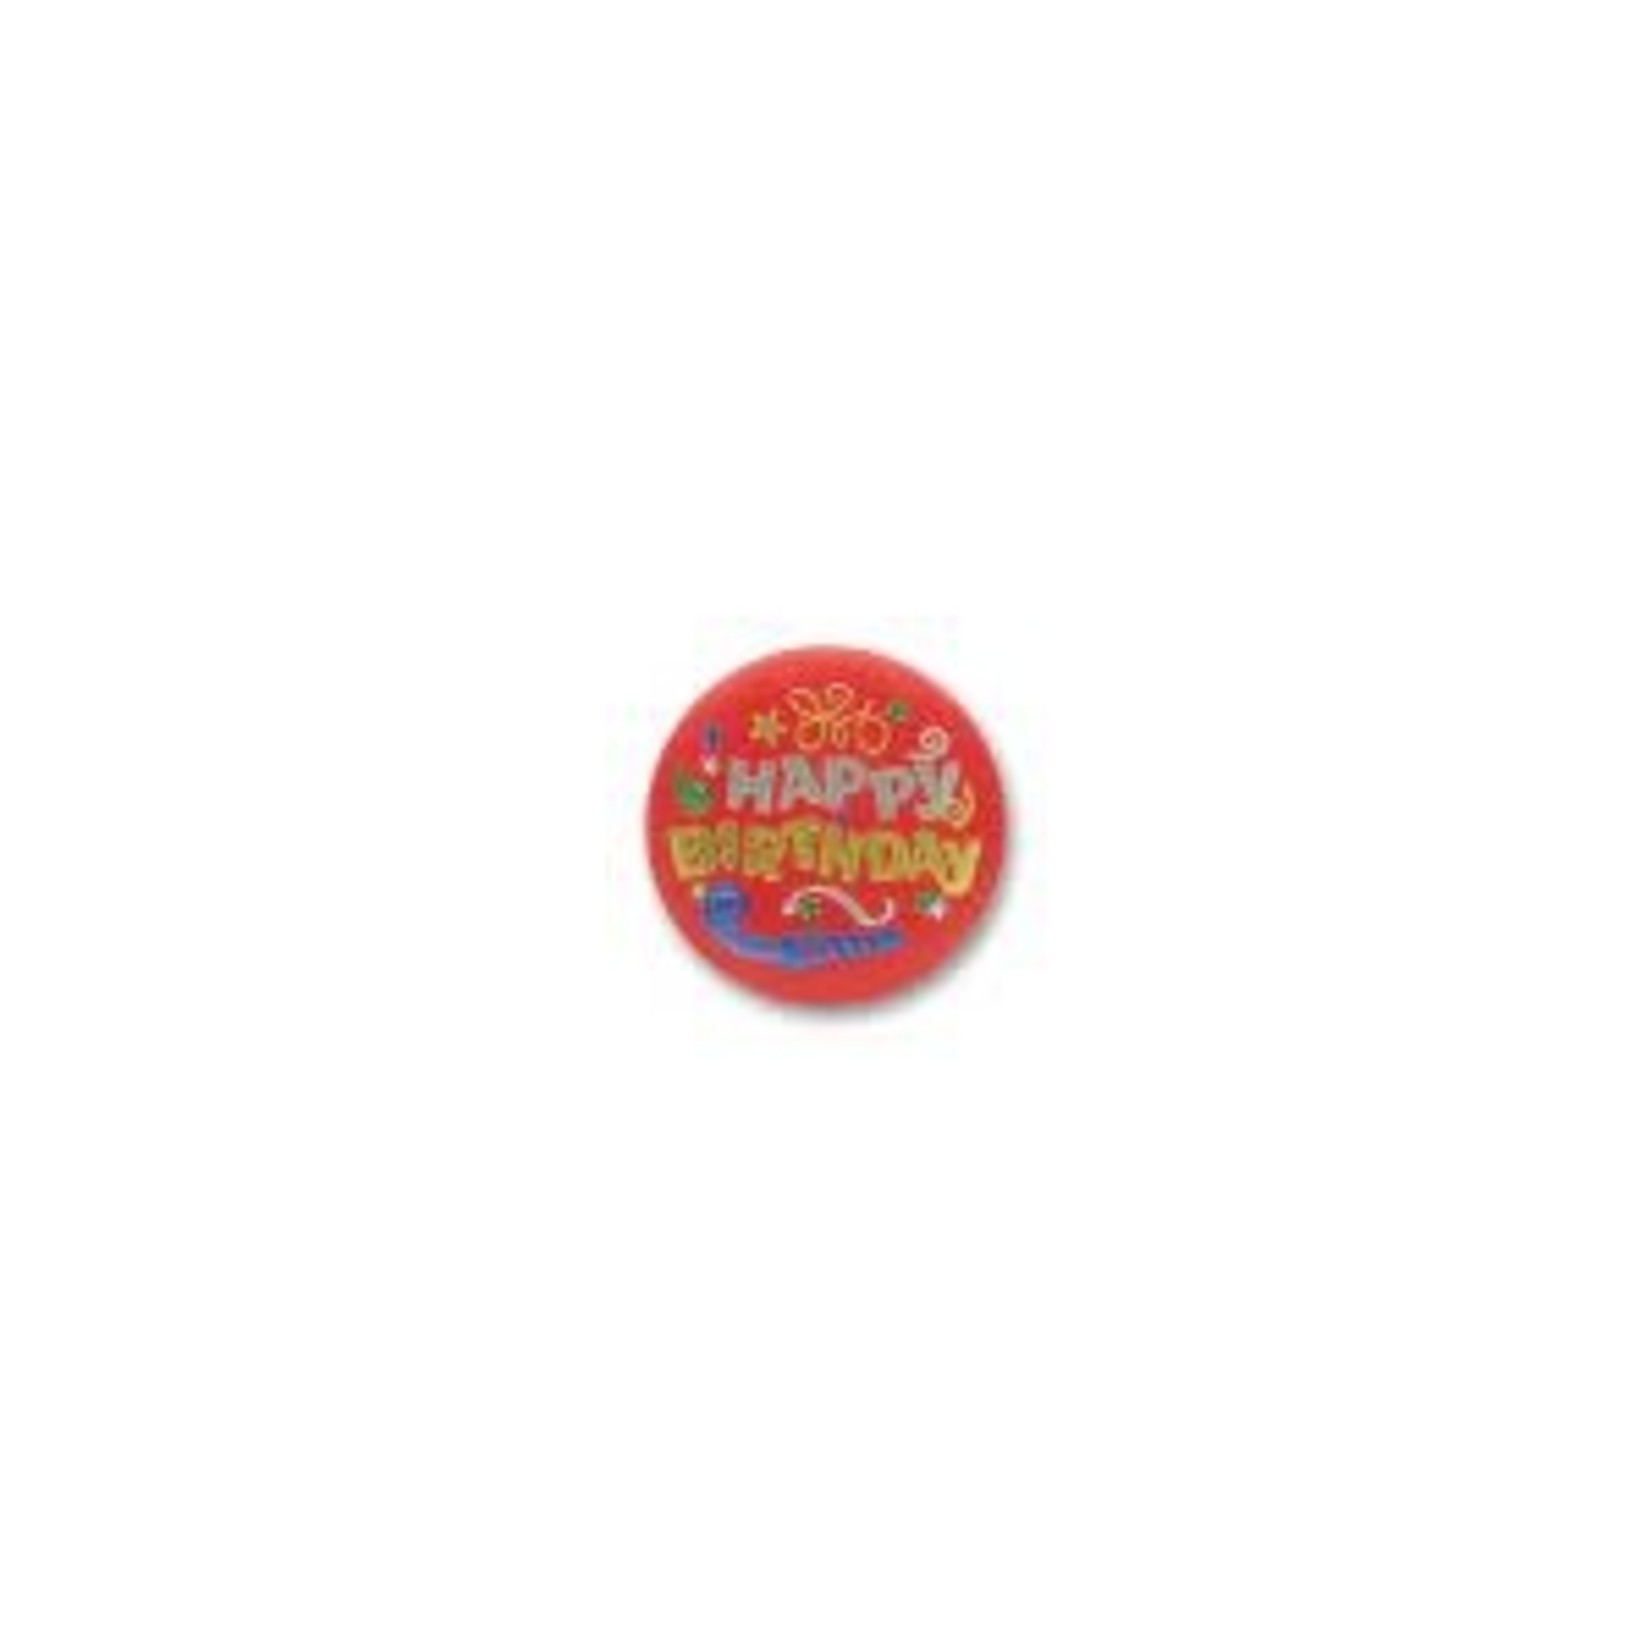 Beistle Happy Birthday Red Satin Button - 1ct.